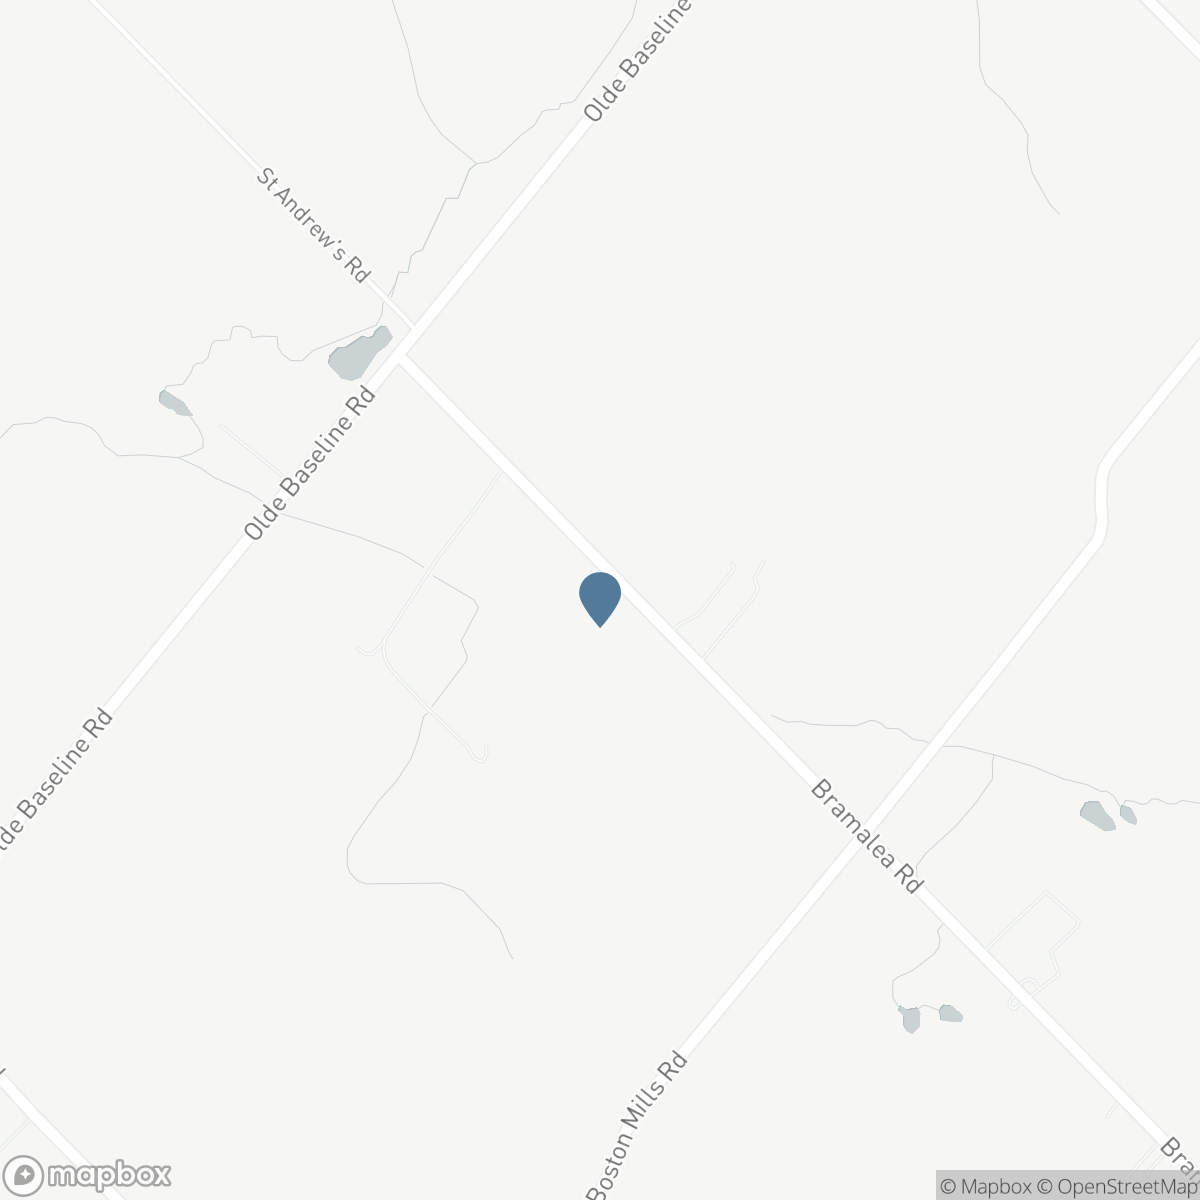 15206 BRAMALEA RD, Caledon, Ontario L7C 2P8